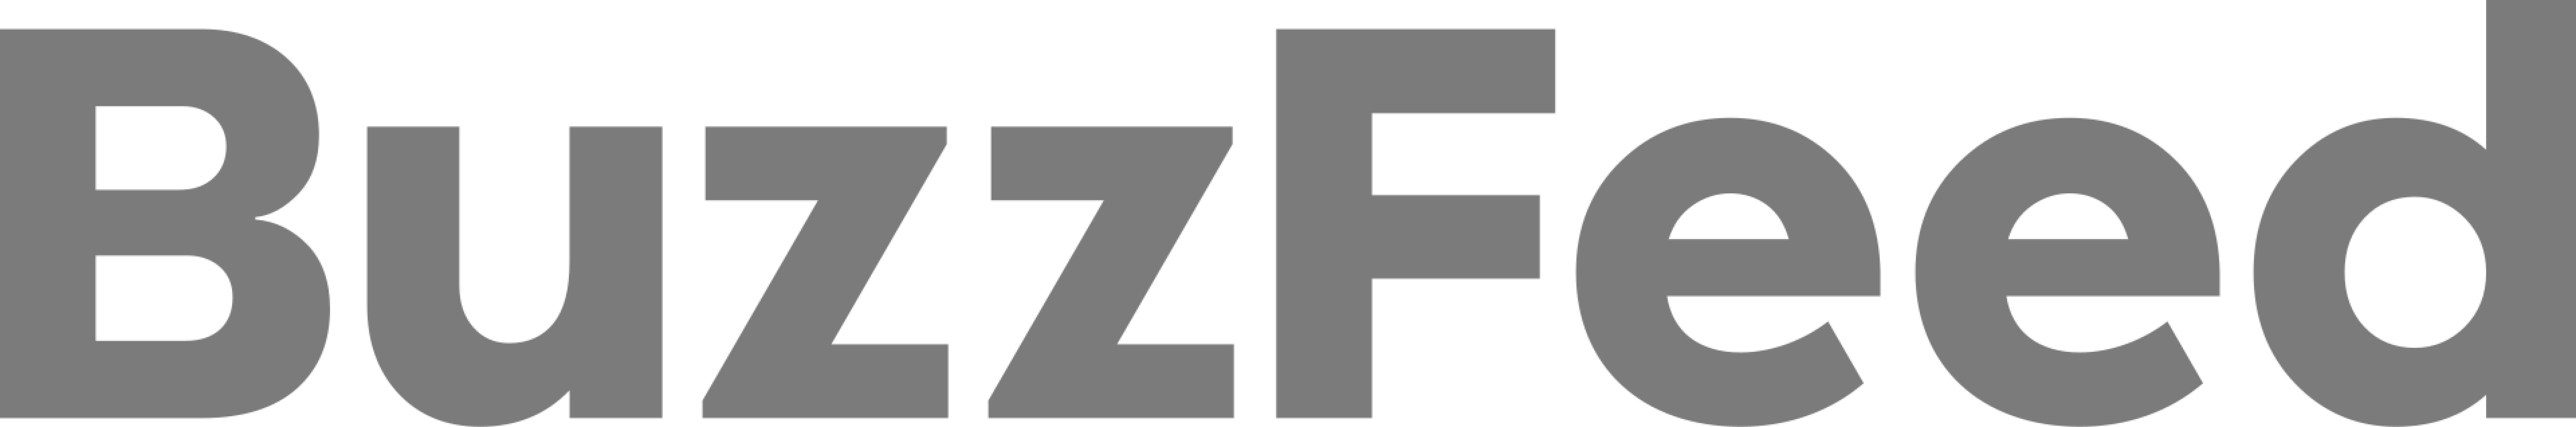 buzzfeed logo gray color